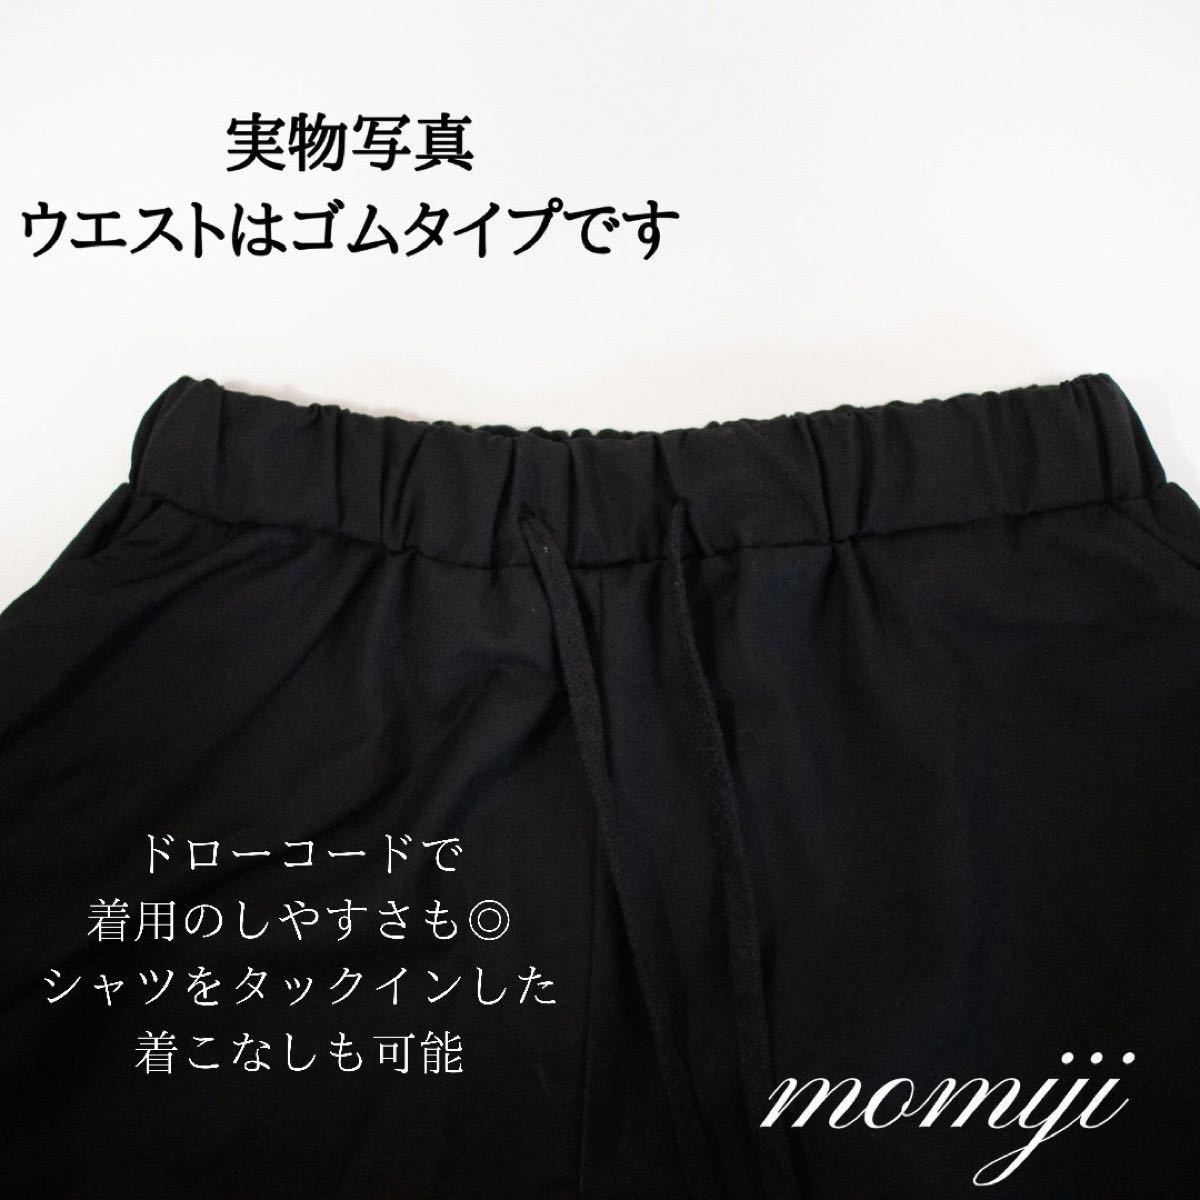 モード系 袴パンツ サルエルパンツ ワイドパンツ 韓国 メンズ 黒 